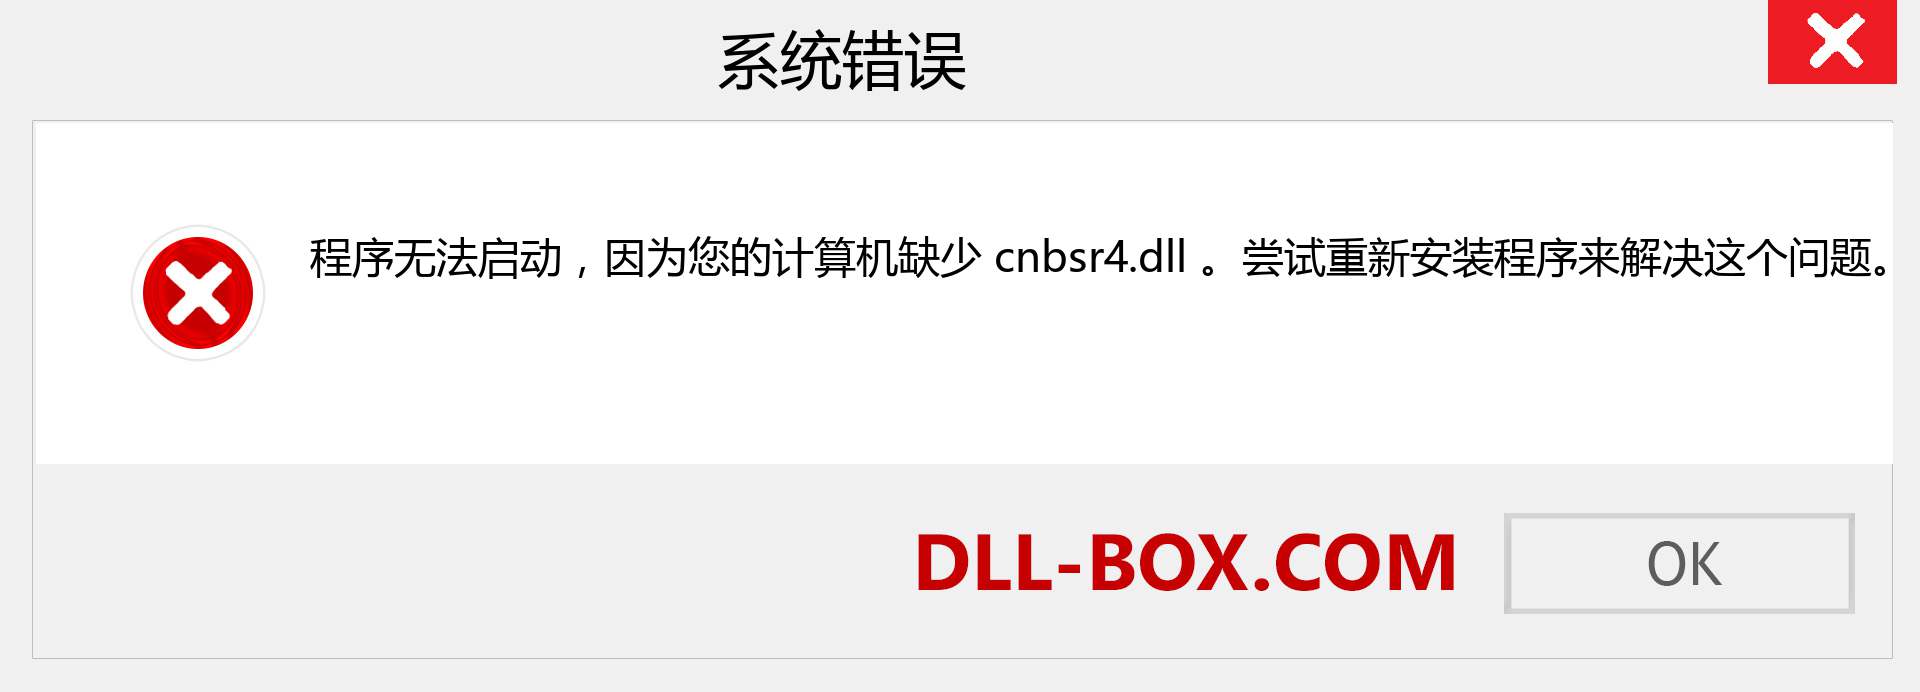 cnbsr4.dll 文件丢失？。 适用于 Windows 7、8、10 的下载 - 修复 Windows、照片、图像上的 cnbsr4 dll 丢失错误